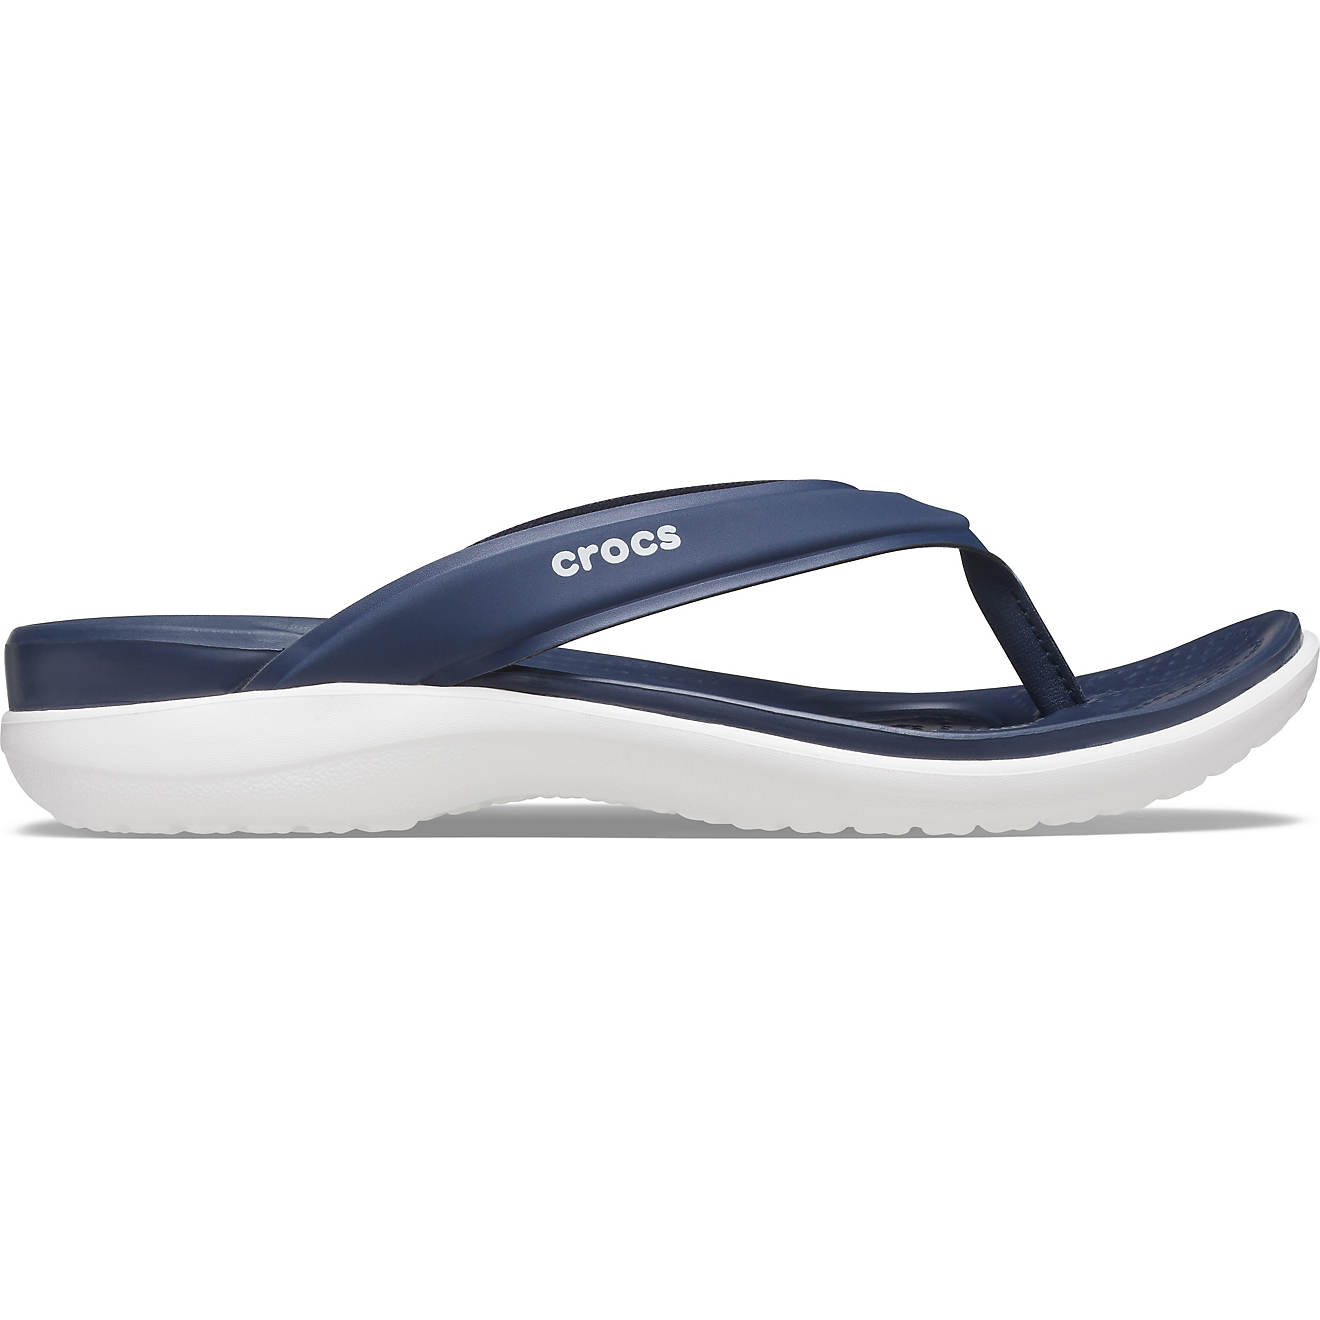 Crocs Women's Capri Sporty Flip Flop Sandals                                                                                     - view number 1